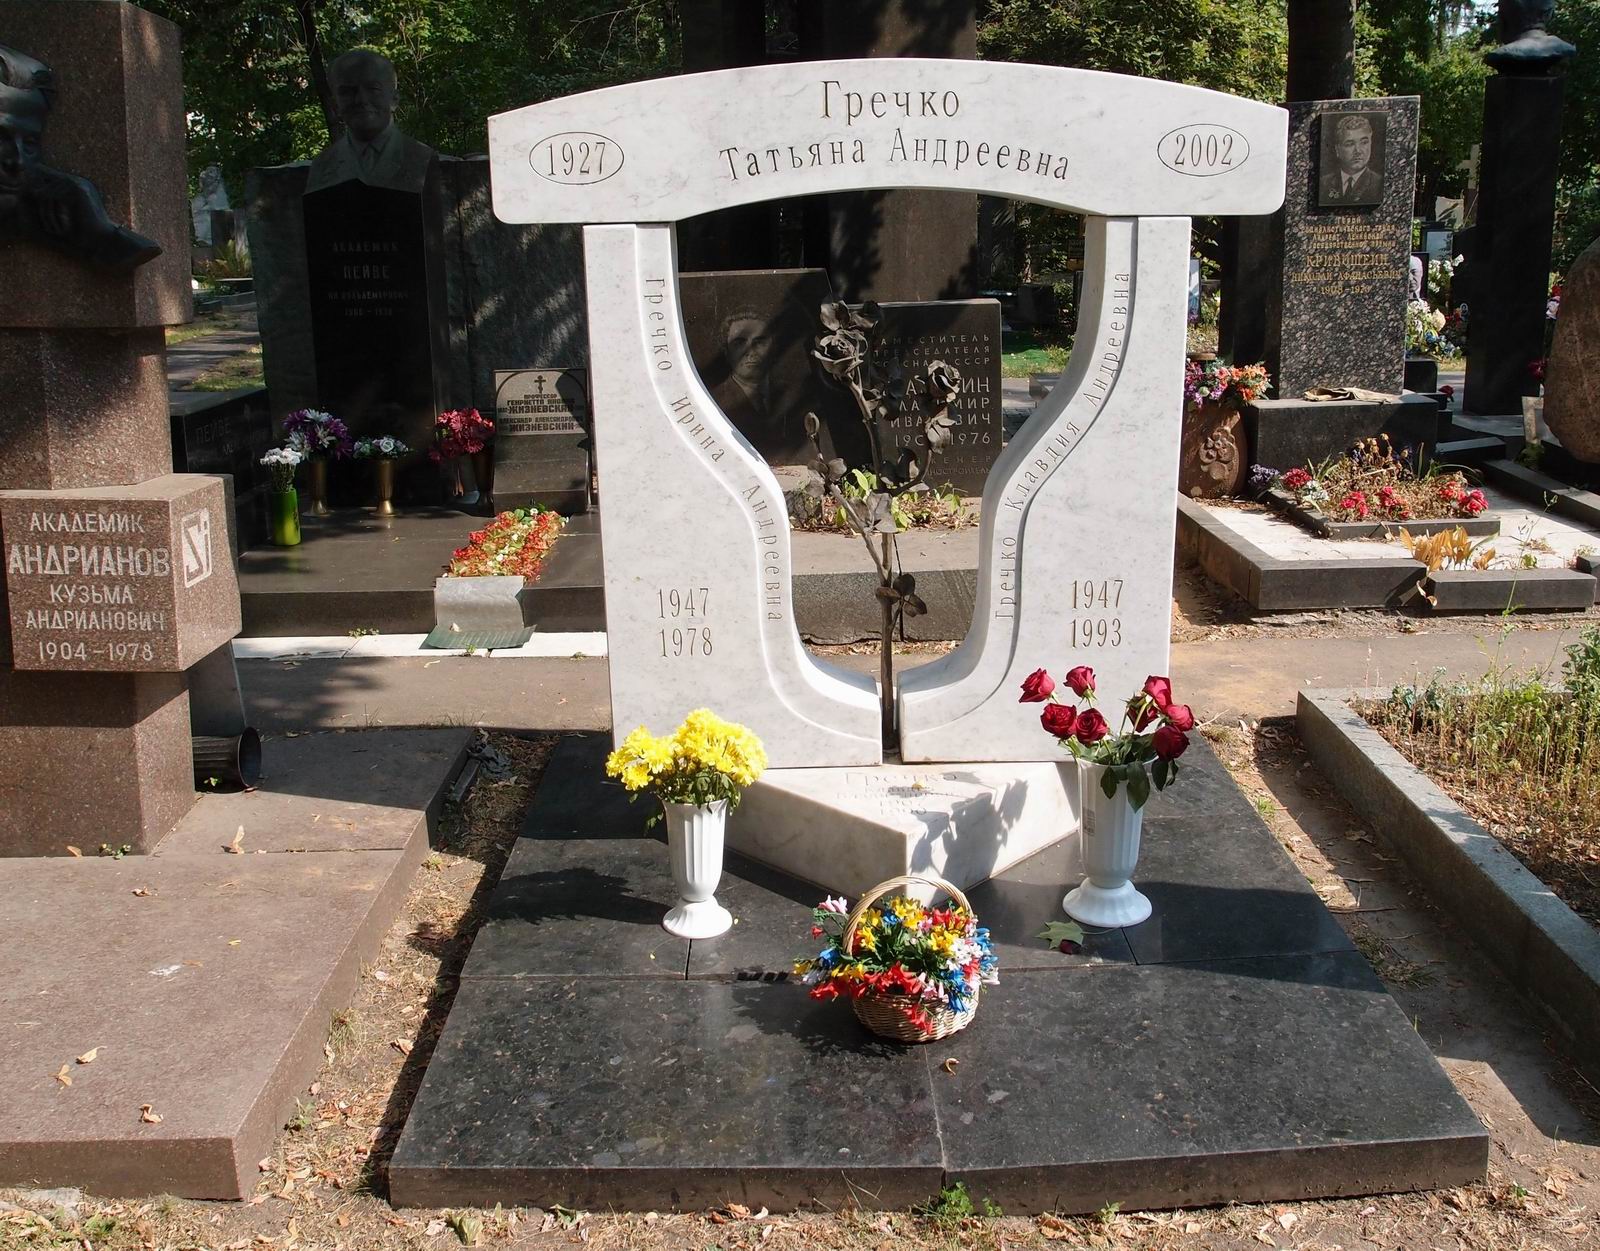 Памятник на могиле Гречко К.В. (1907–1990), арх. И.Студенкин, на Новодевичьем кладбище (9–3–10).